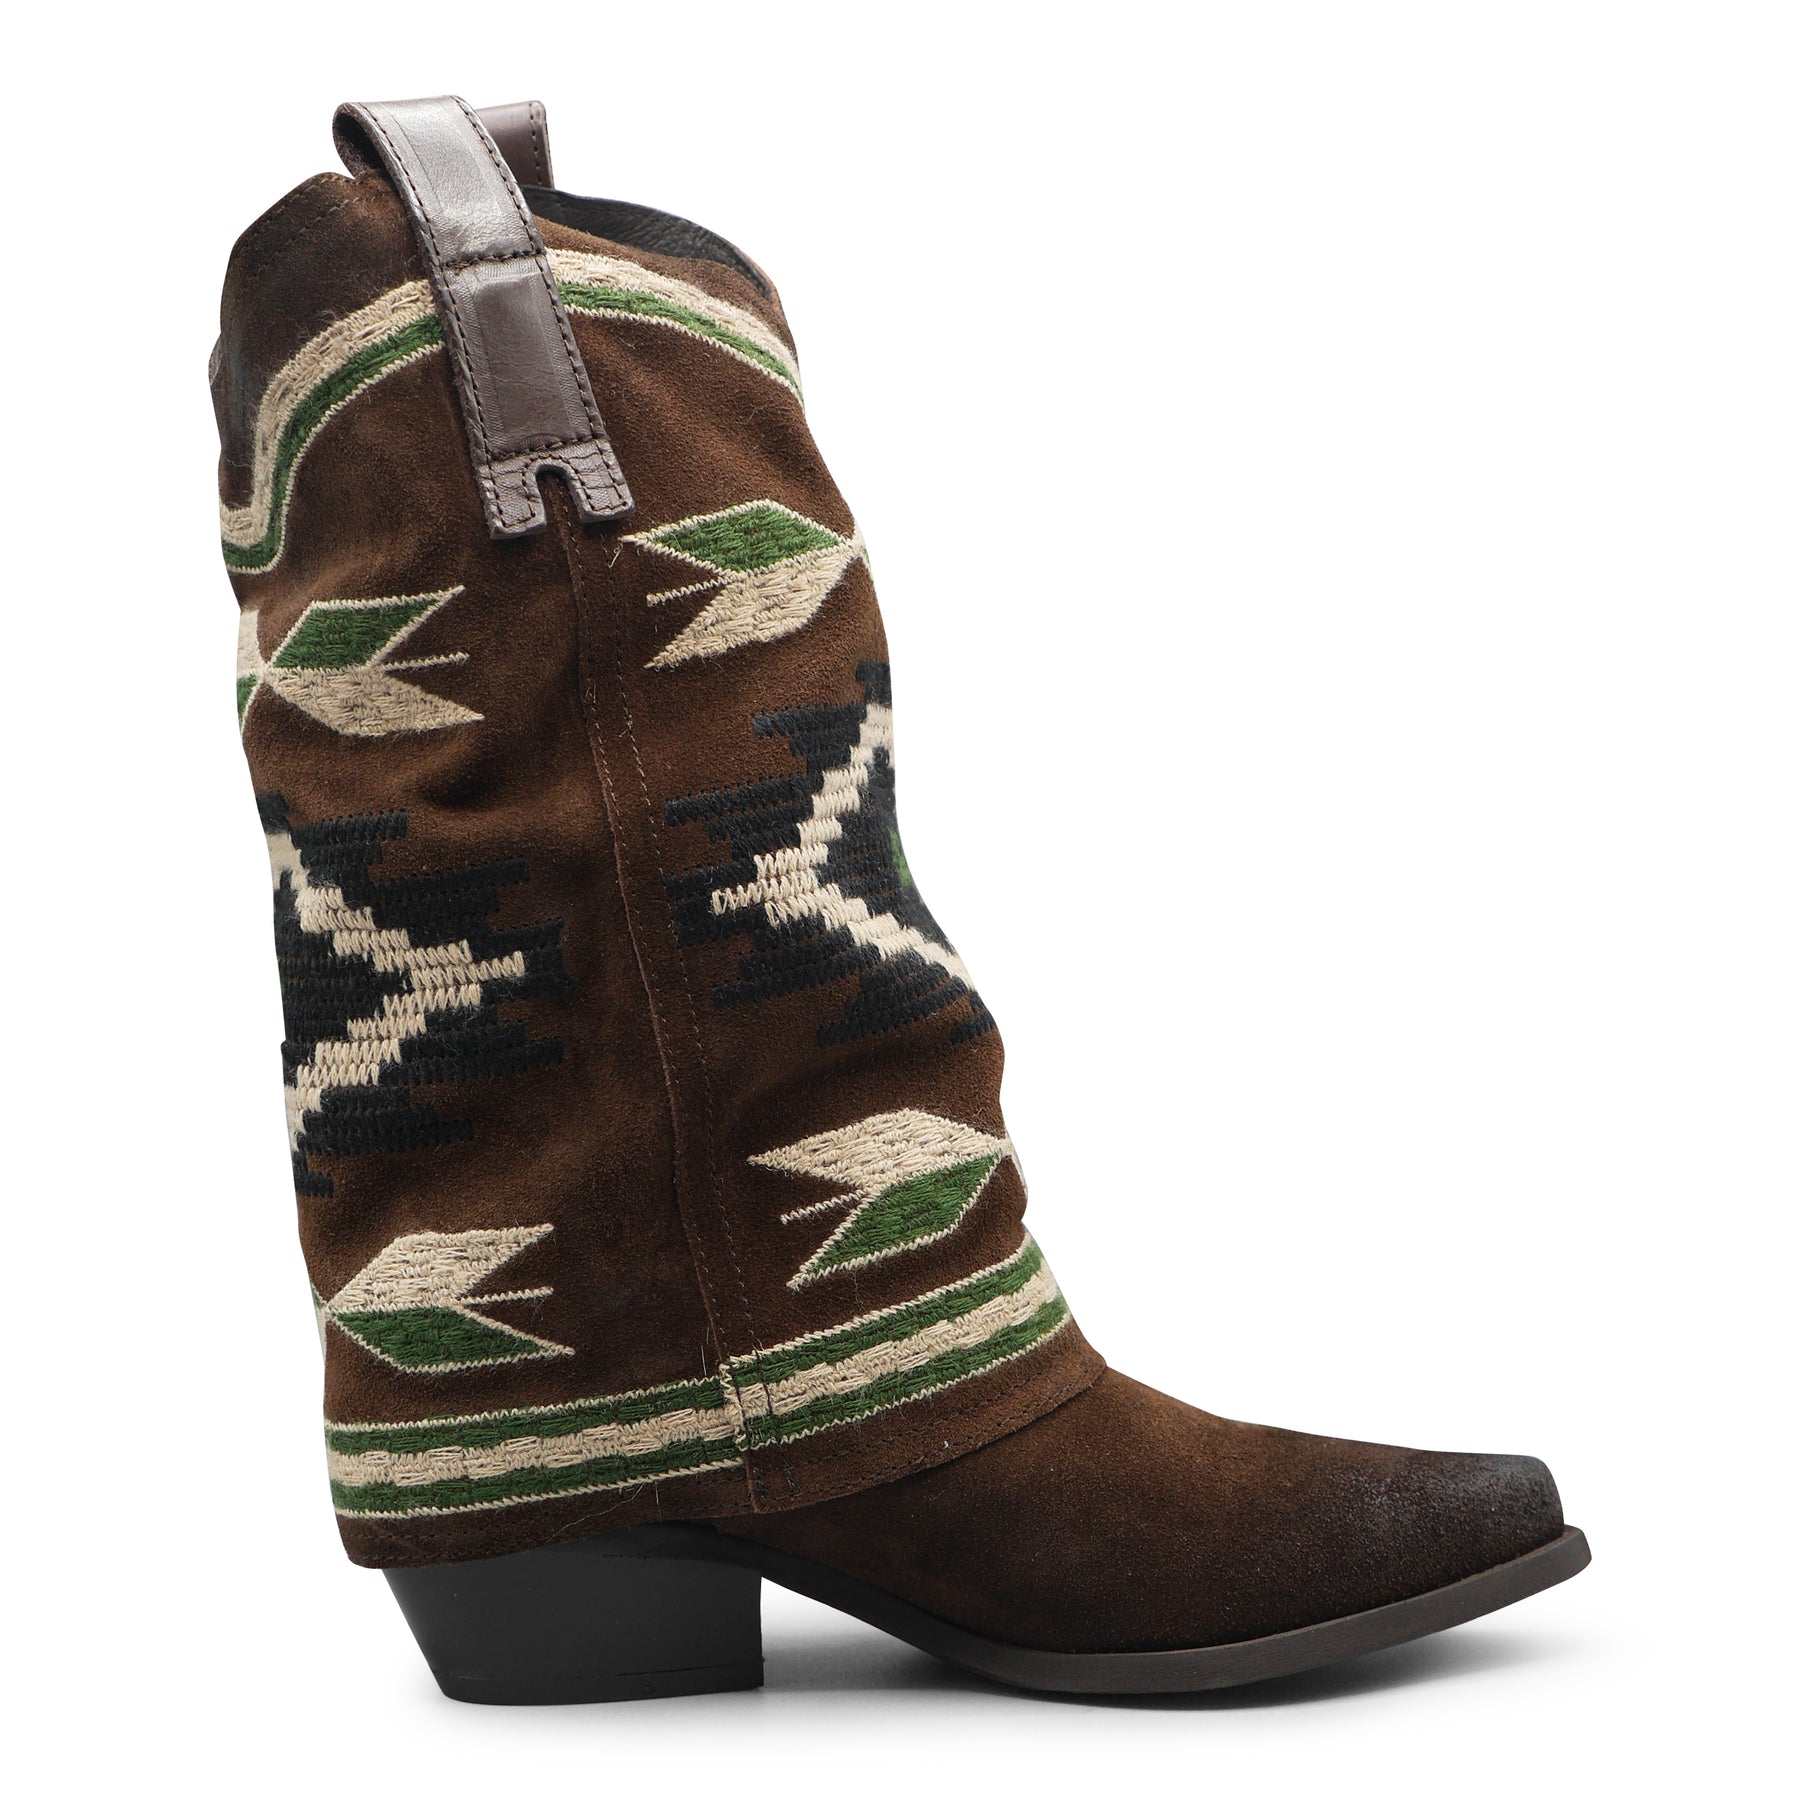 IZEL - Brown/Green Aztec Boot